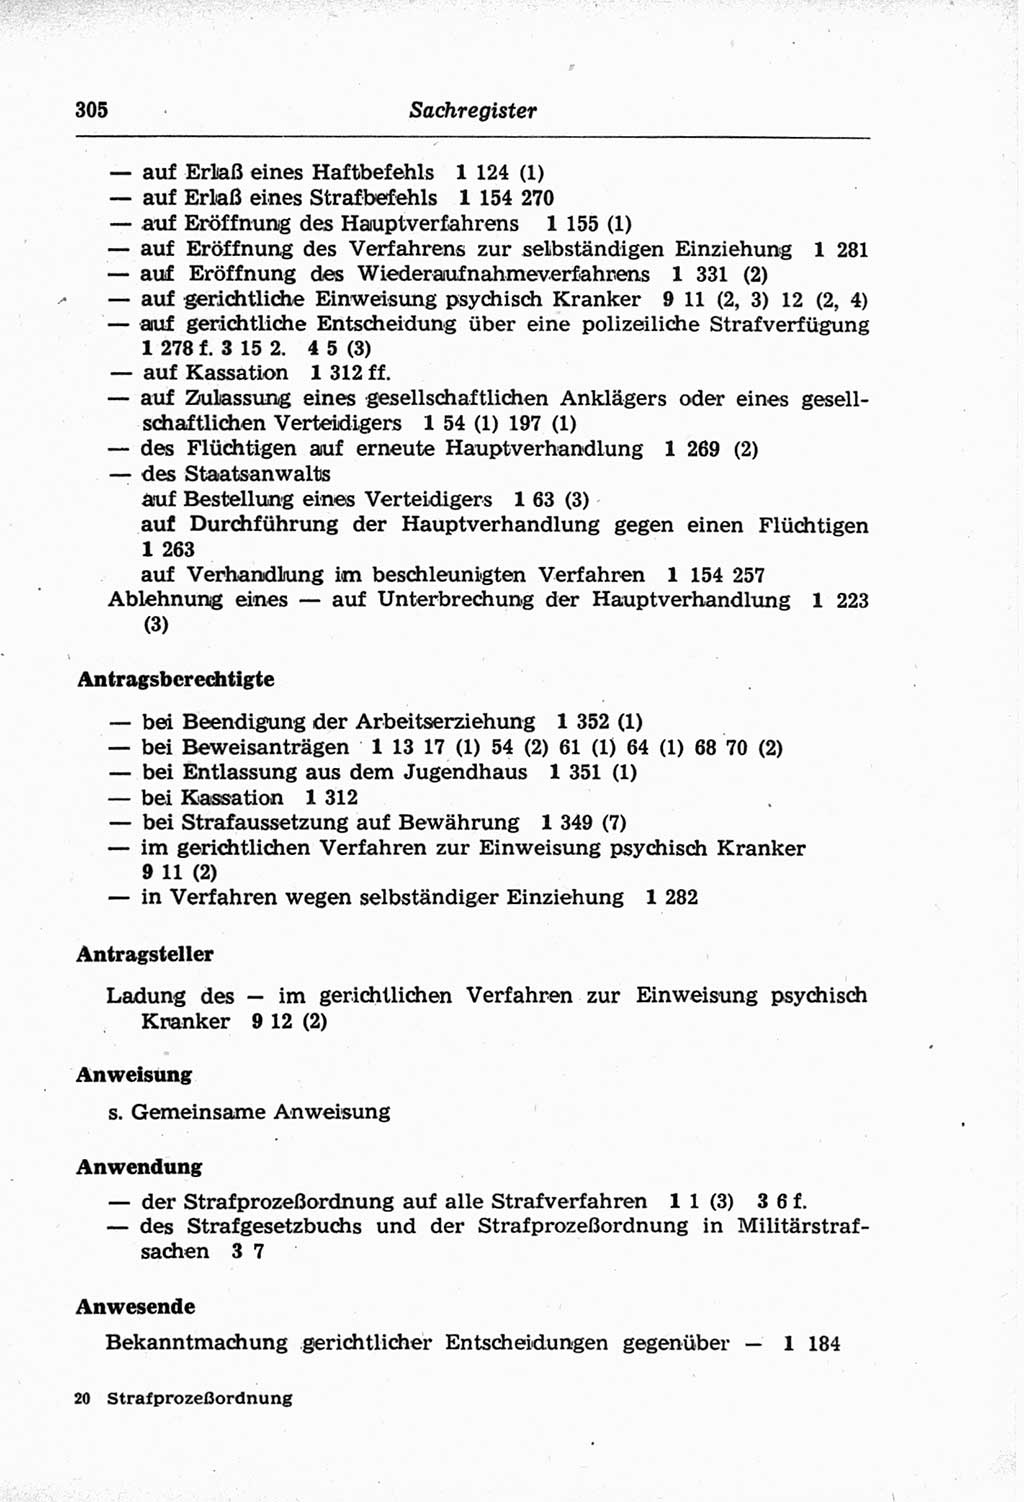 Strafprozeßordnung (StPO) der Deutschen Demokratischen Republik (DDR) und angrenzende Gesetze und Bestimmungen 1968, Seite 305 (StPO Ges. Bstgn. DDR 1968, S. 305)